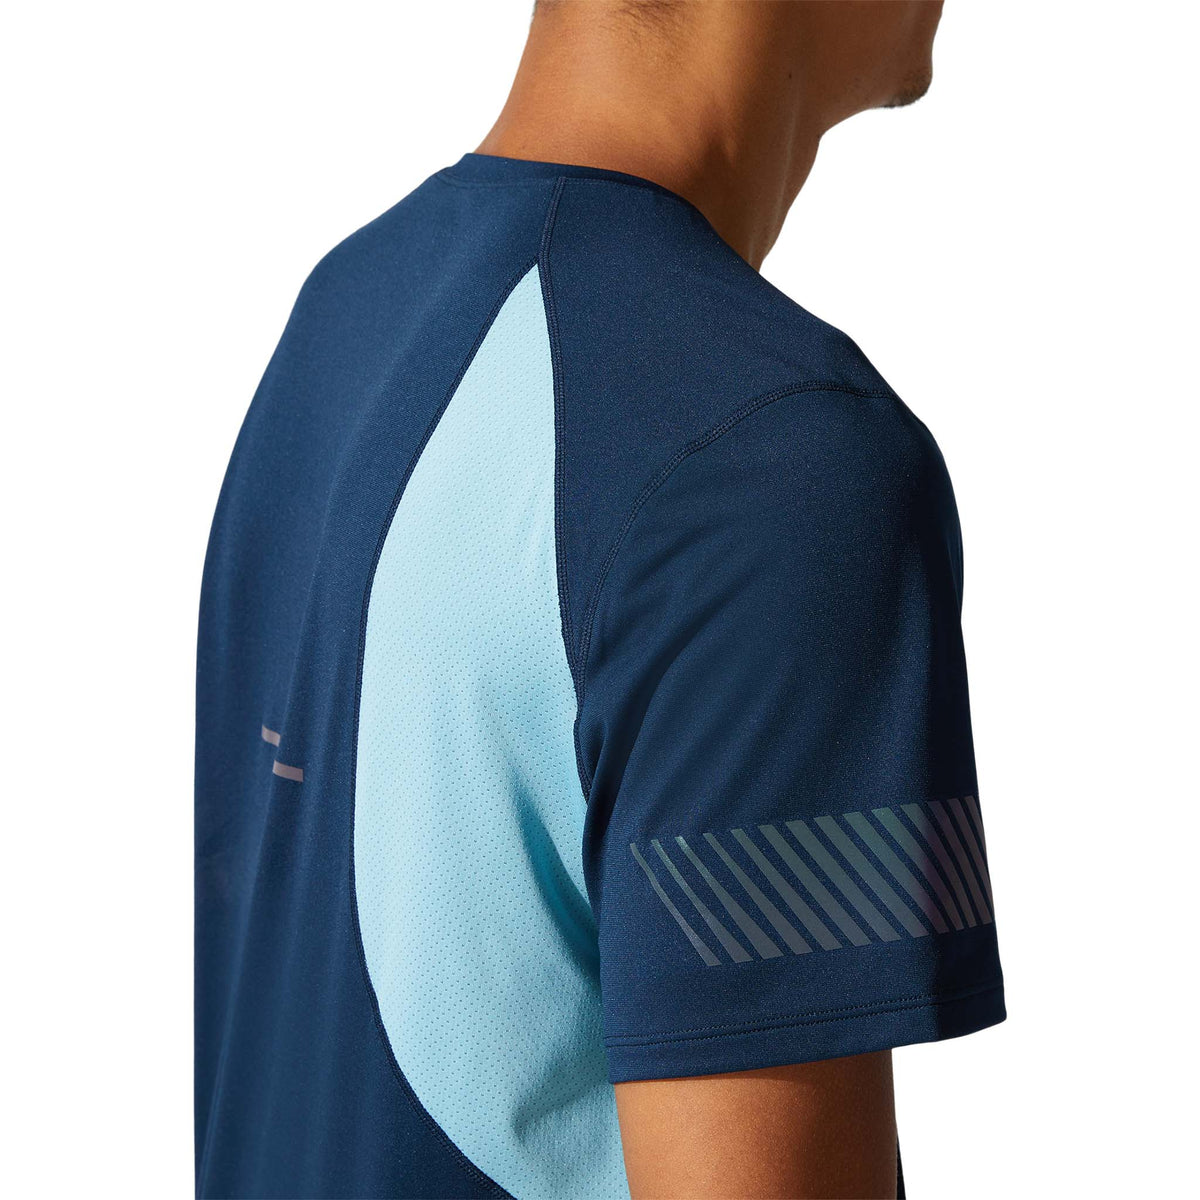 ASICS Visibility T-shirt de course bleu homme bande refléchissante 2